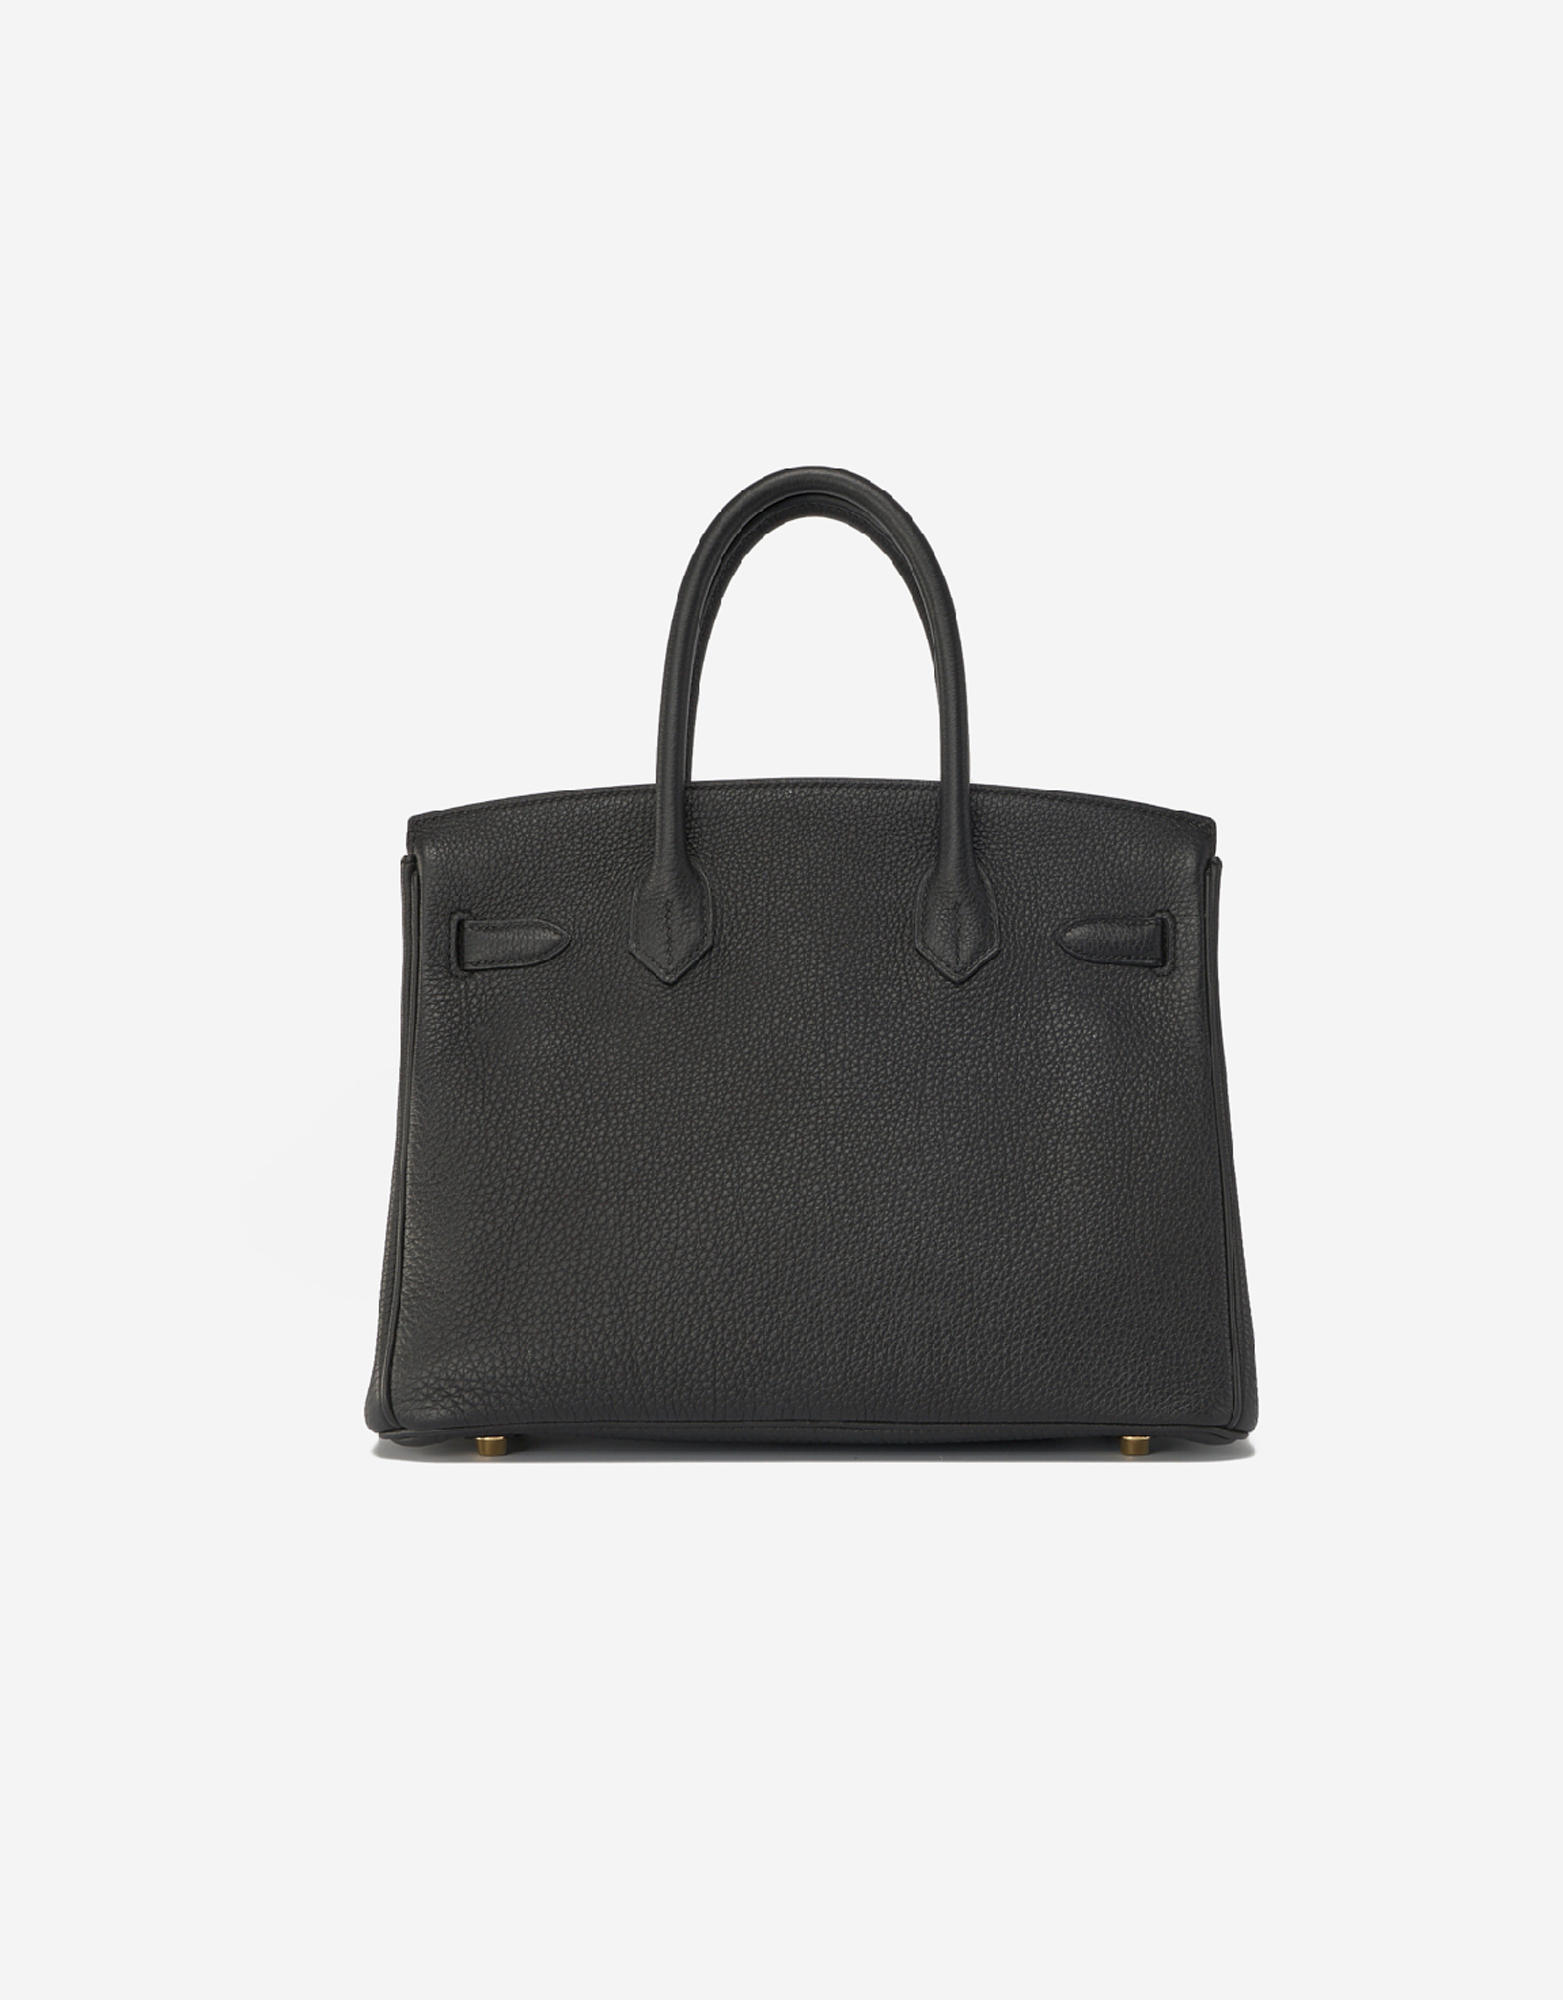 Hermès Black Togo Leather Gold Finish Birkin 30 Bag Hermes